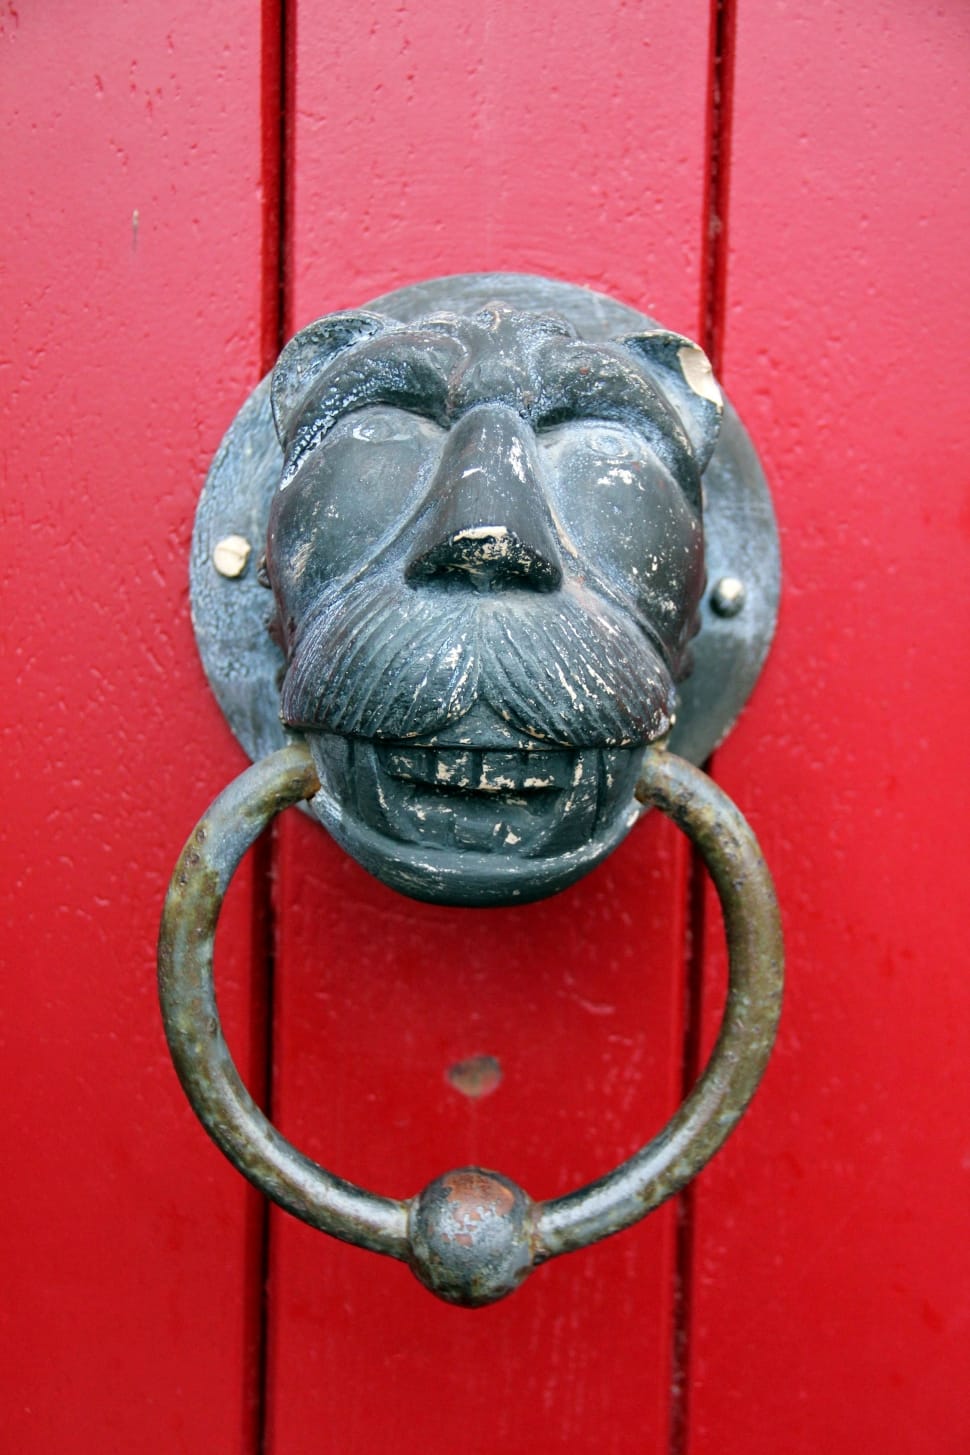 Lion, Lion Head, Doorknocker, Ring, Red, red, door knocker preview